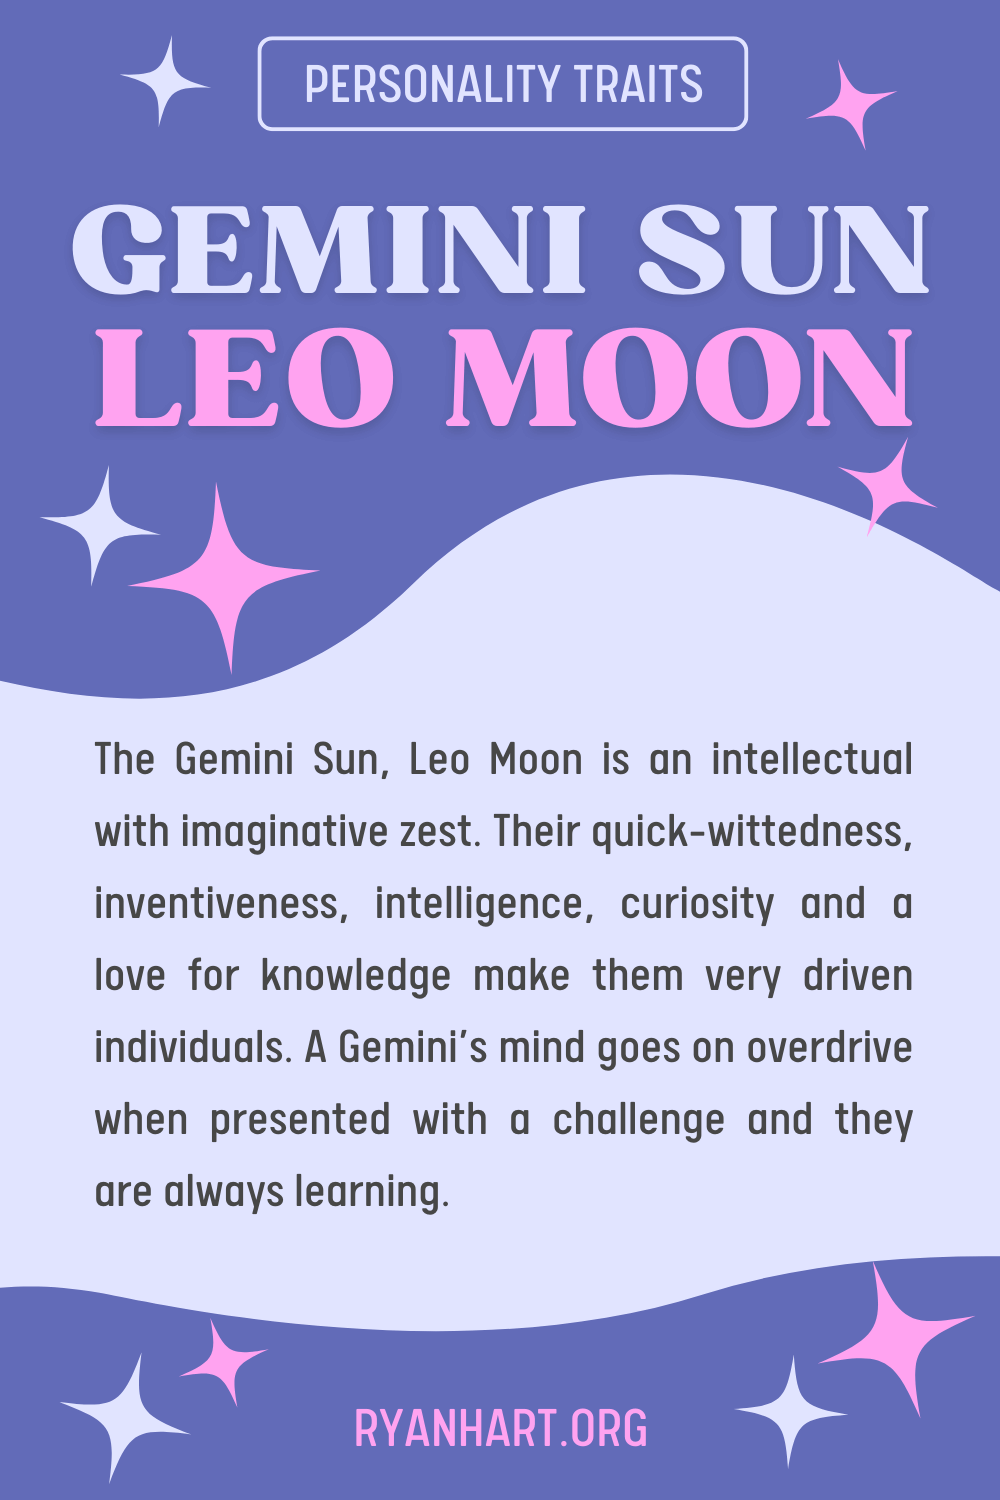  Gemini Sun Leo Moon ပင်ကိုယ်စရိုက်လက္ခဏာများ